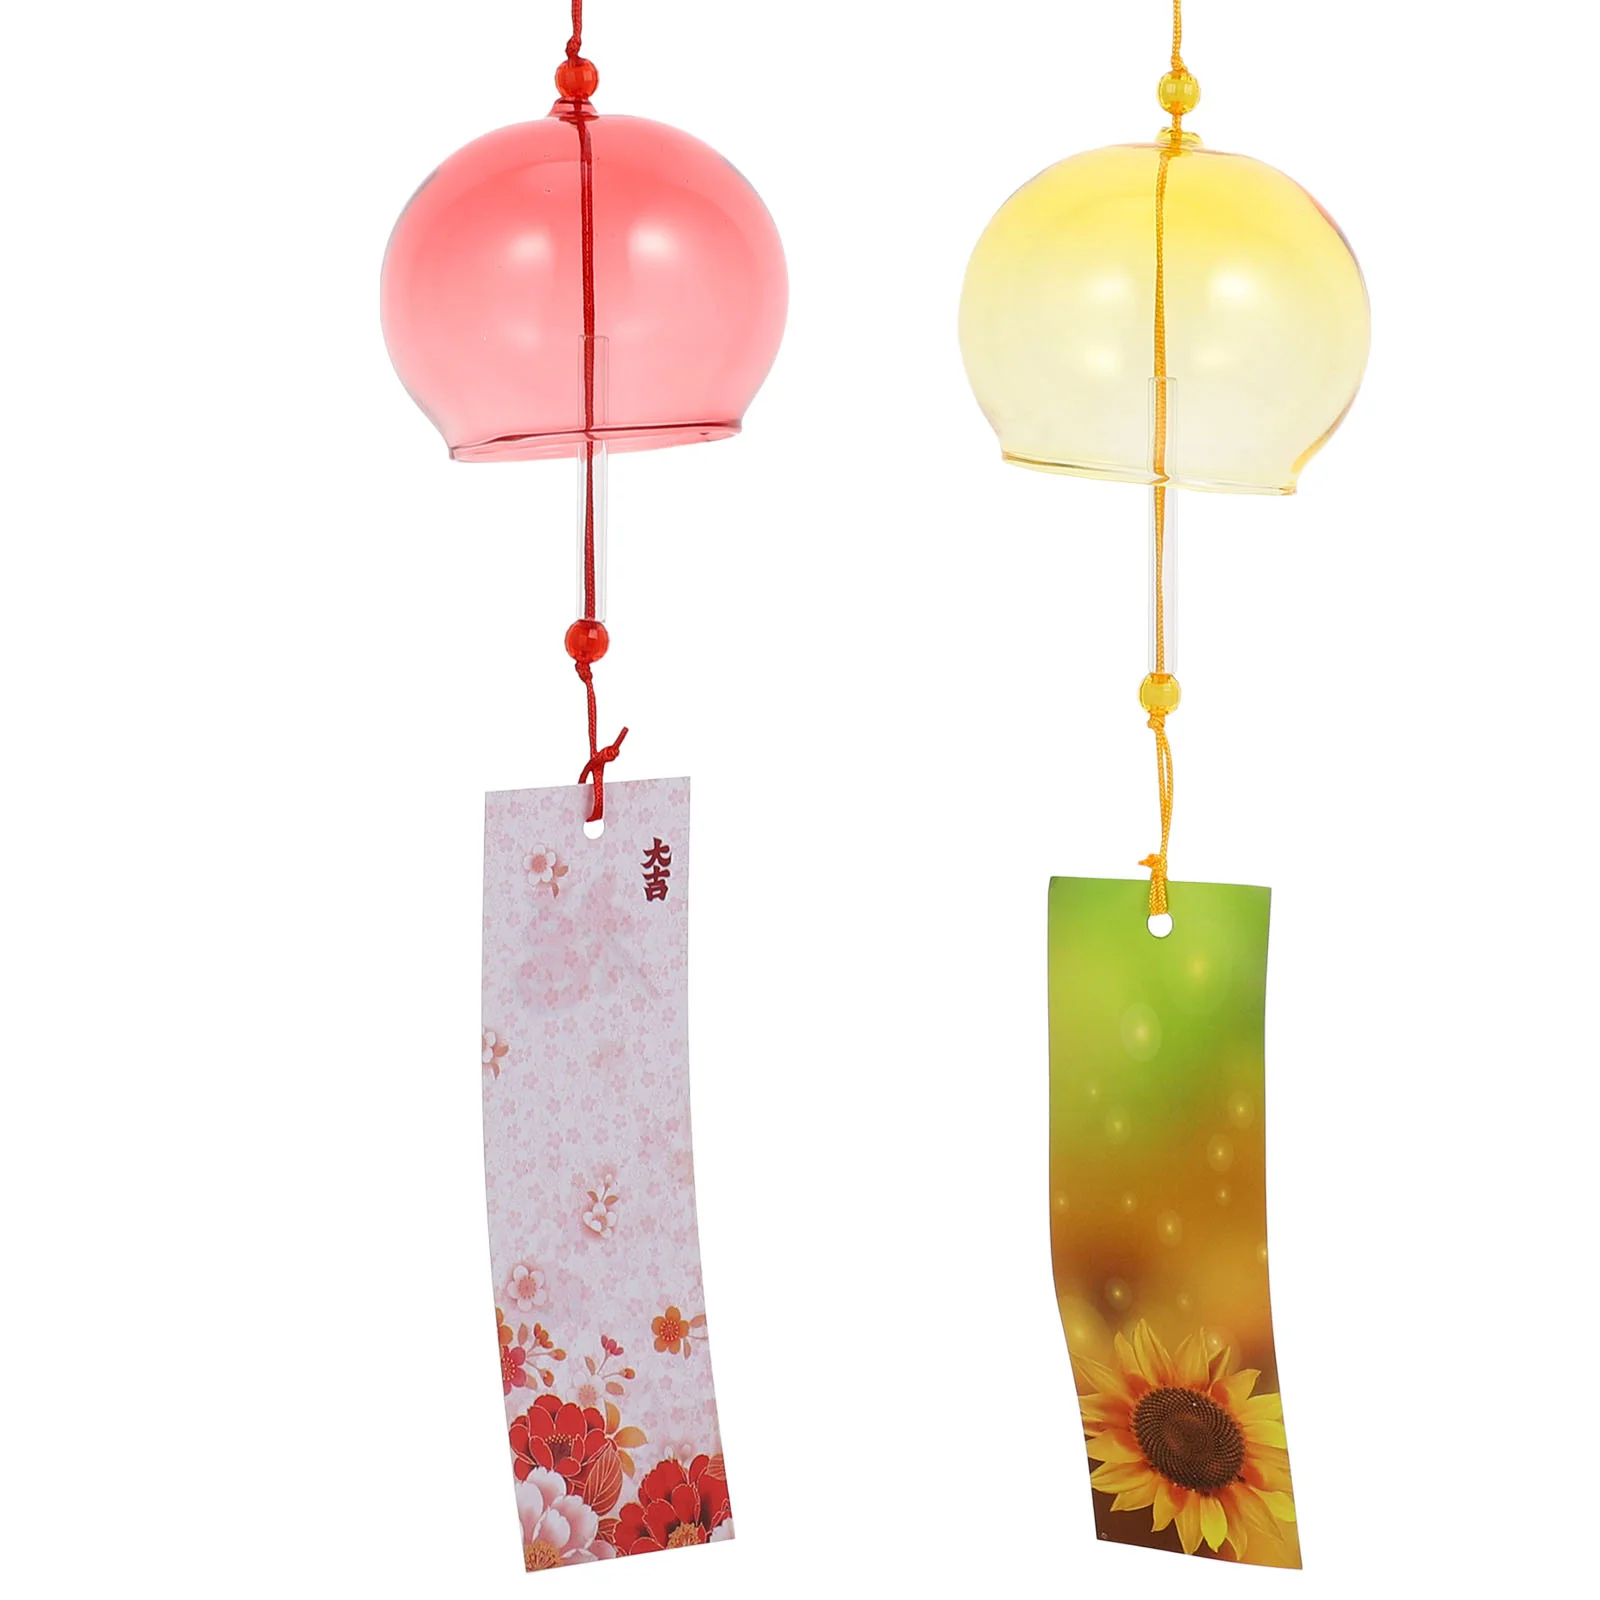 

4 шт. подвески для балкона, стеклянные ветряные колокольчики в японском стиле, подвесные украшения, ярлыки, креативные бумажные декорации